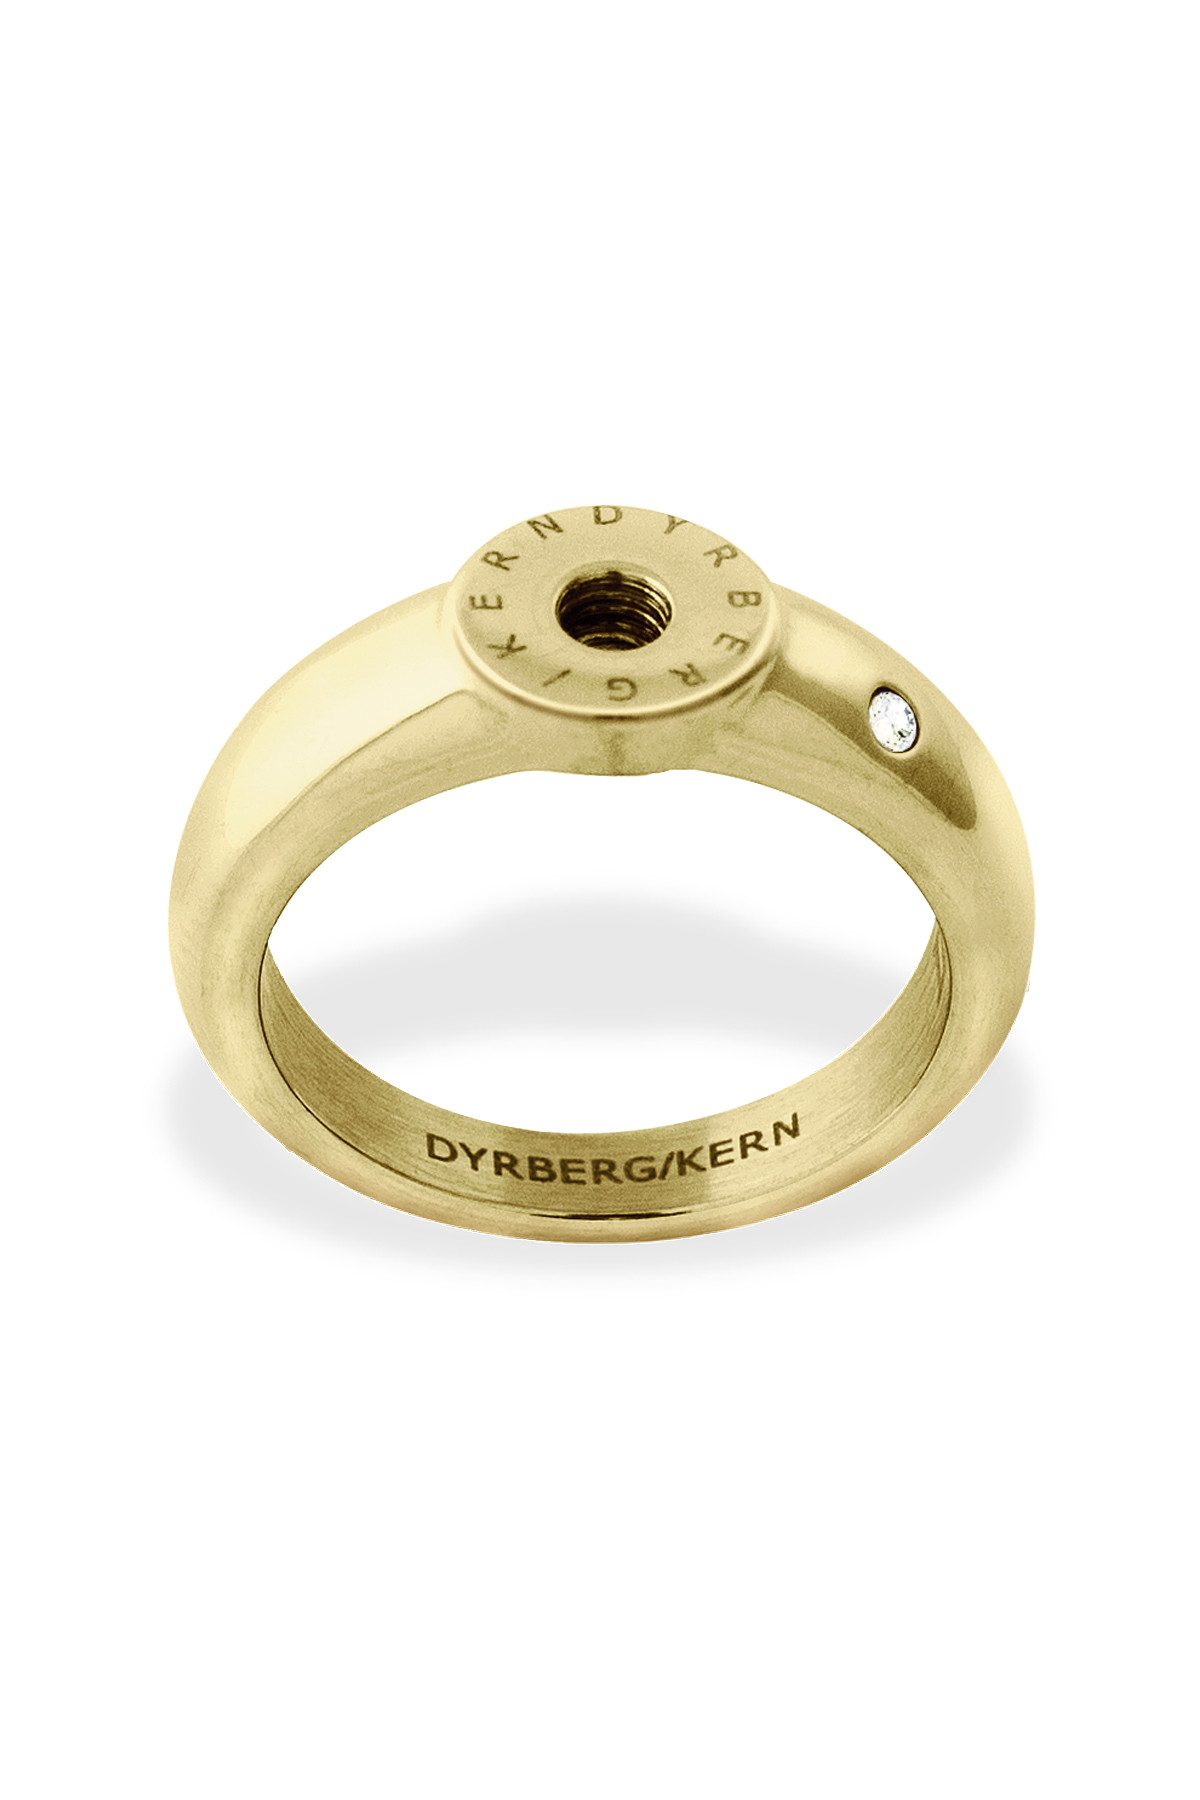 Billede af Dyrberg/Kern Ring Ring, Farve: Guld, Størrelse: I/51, Dame